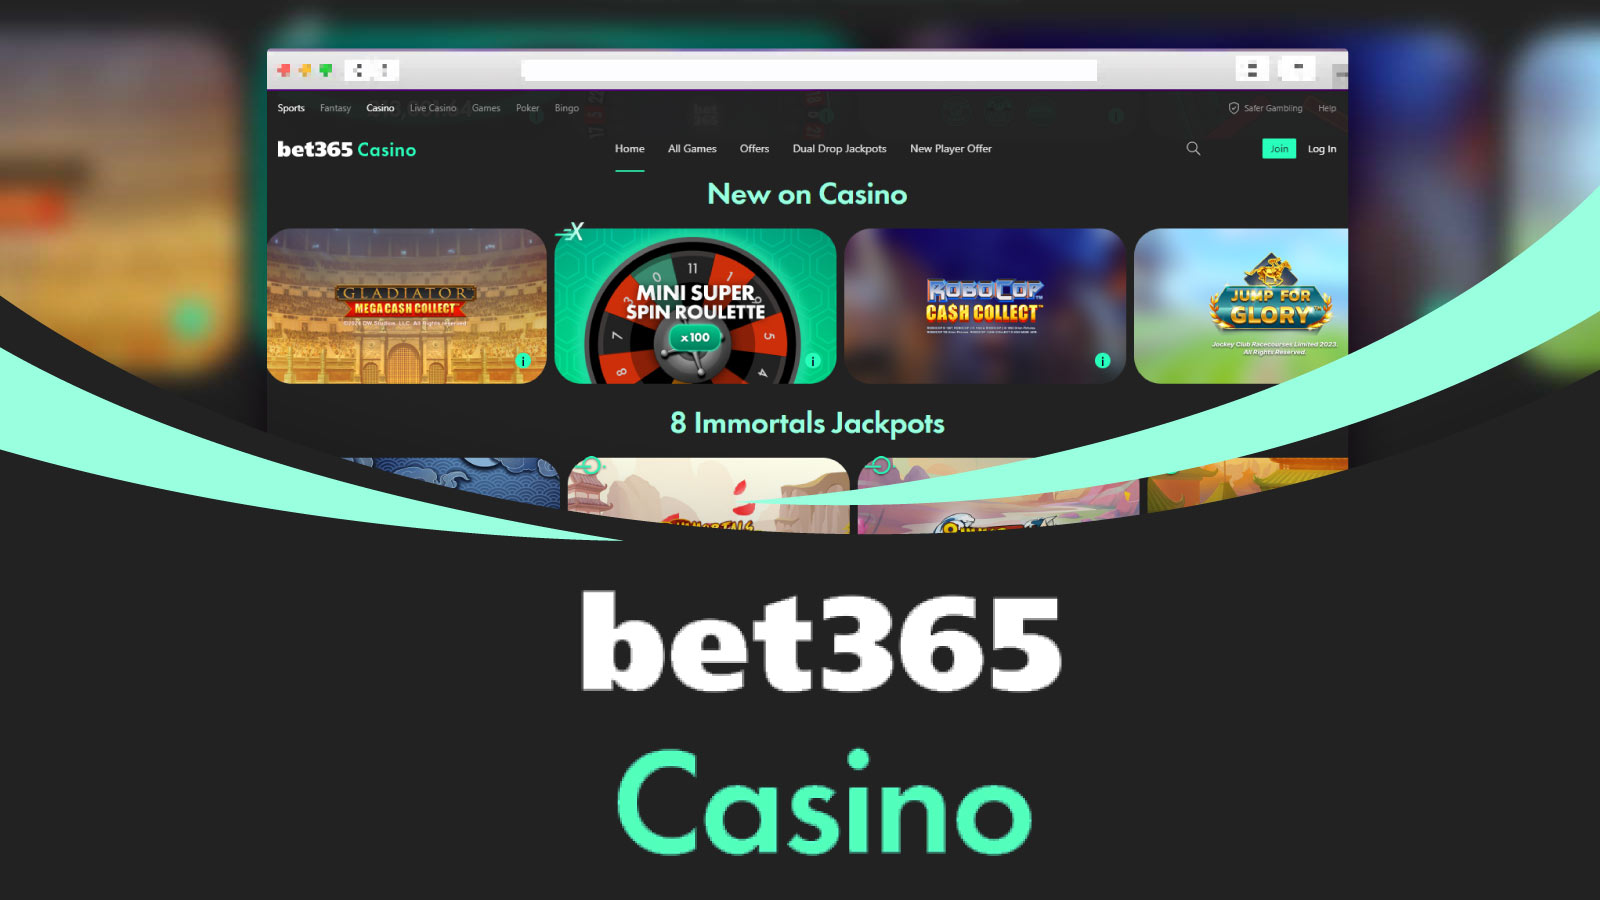 Bet365 Casino Better for Live Dealer Games